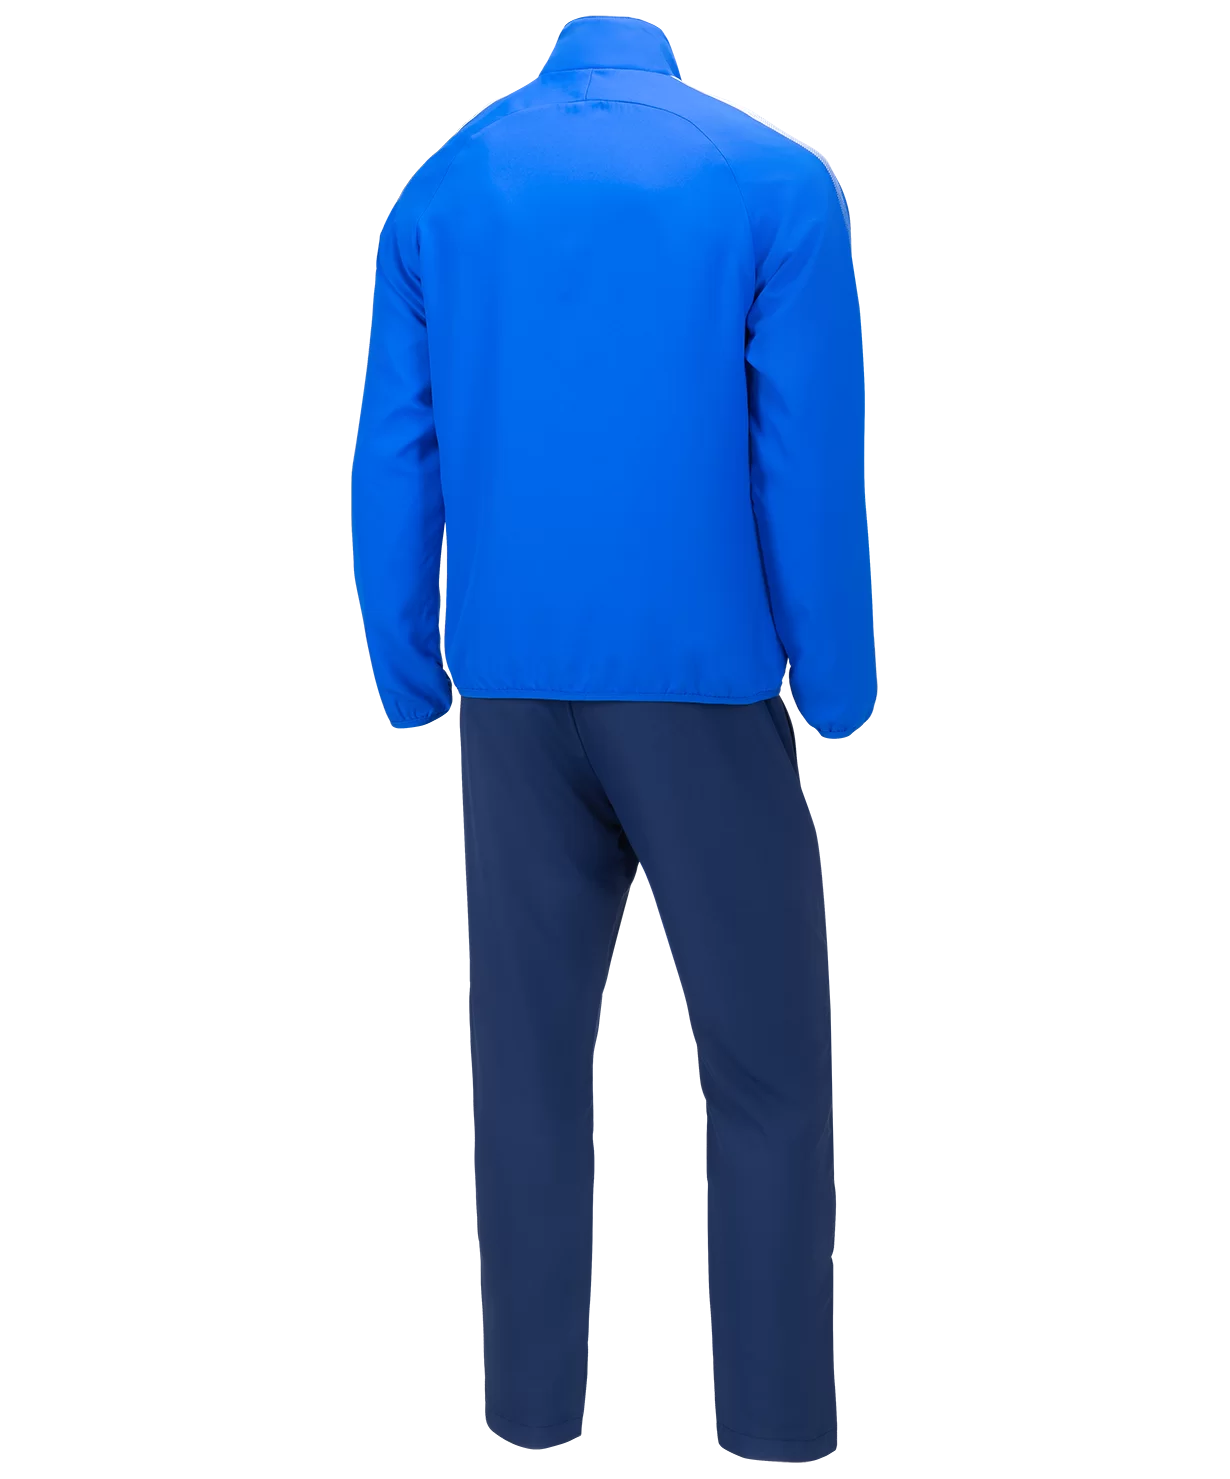 Реальное фото Костюм спортивный CAMP Lined Suit, синий/темно-синий Jögel от магазина СпортЕВ